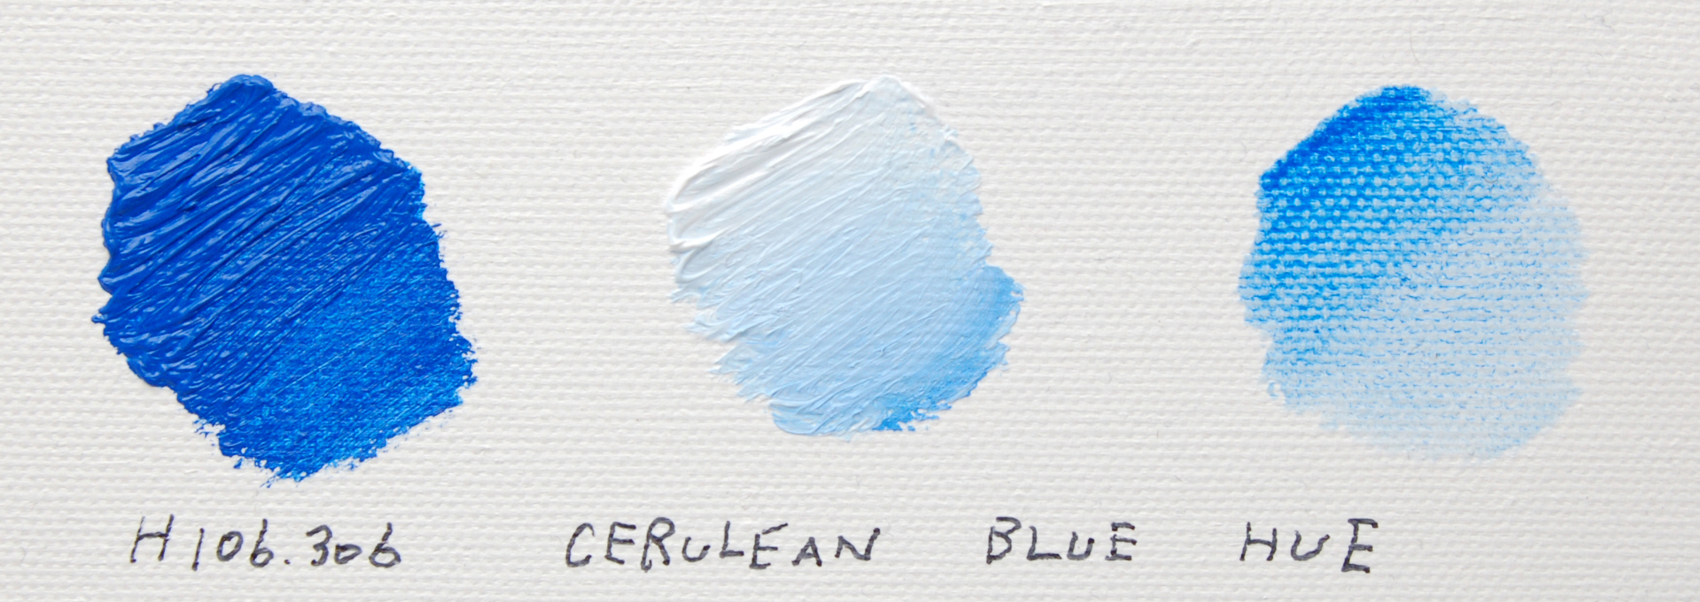 セルリアンブルーヒュー/CERULEAN BLUE HUE